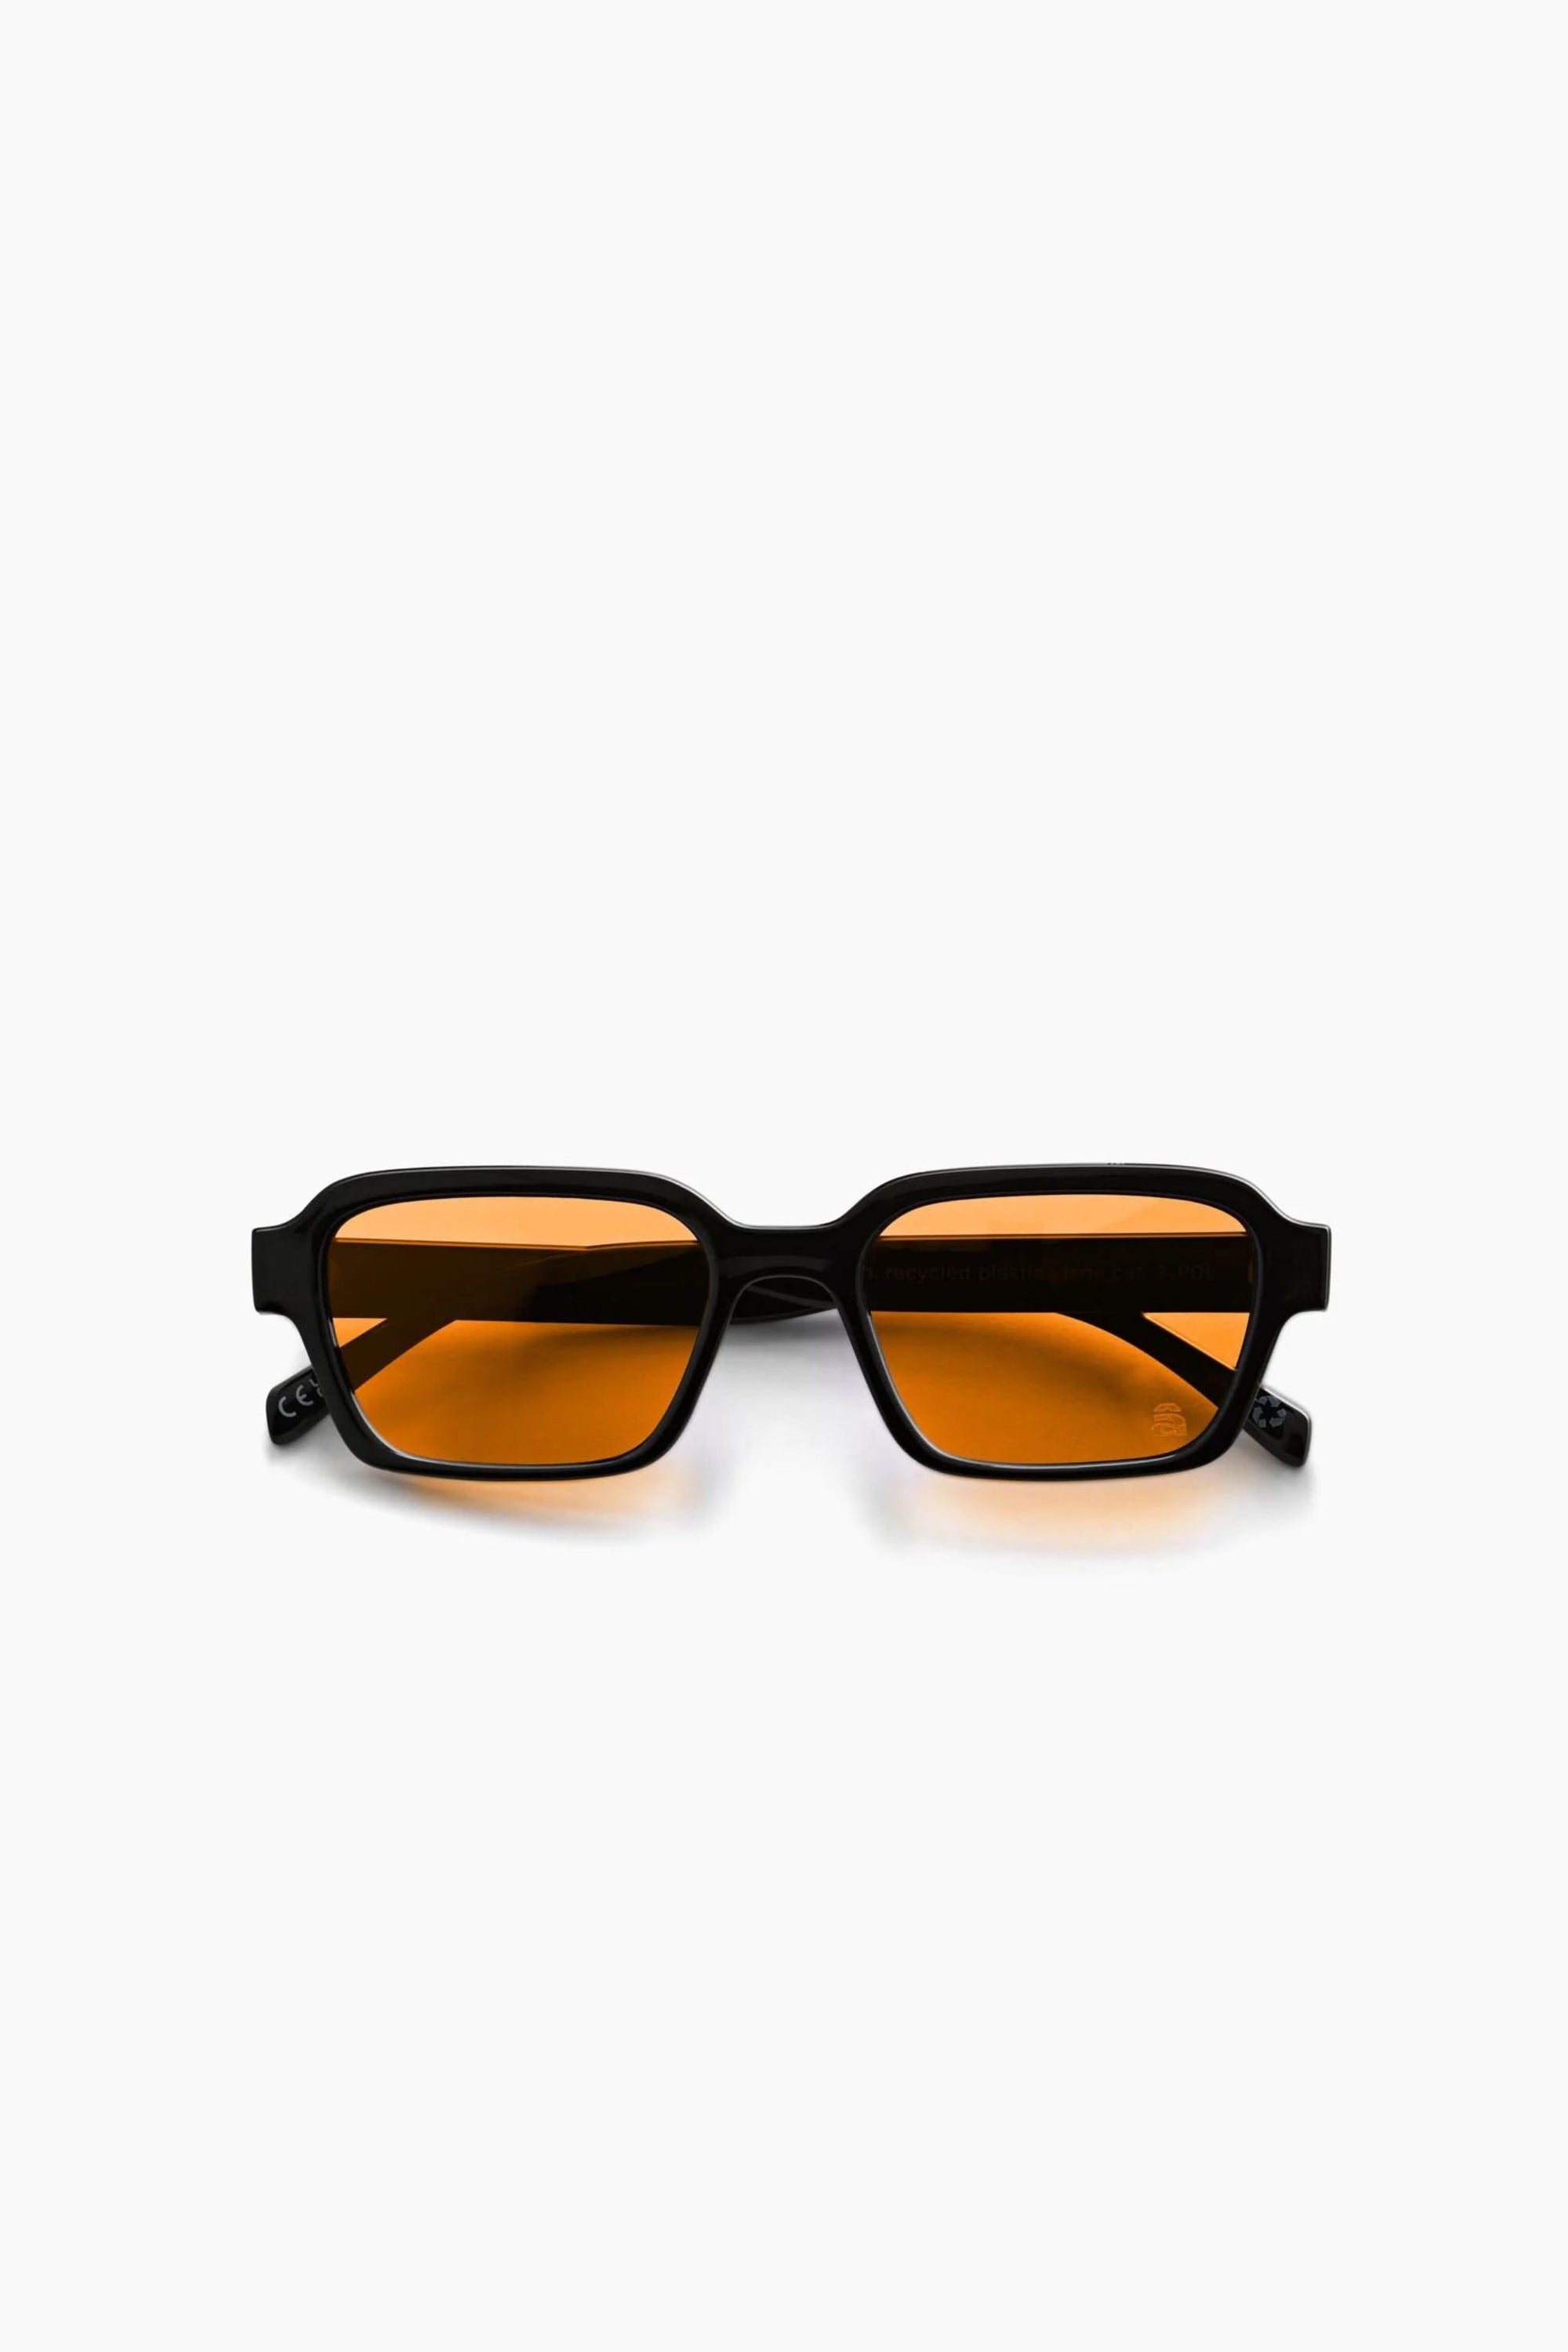 Booth Sunglasses Elysium Black / Persimmon